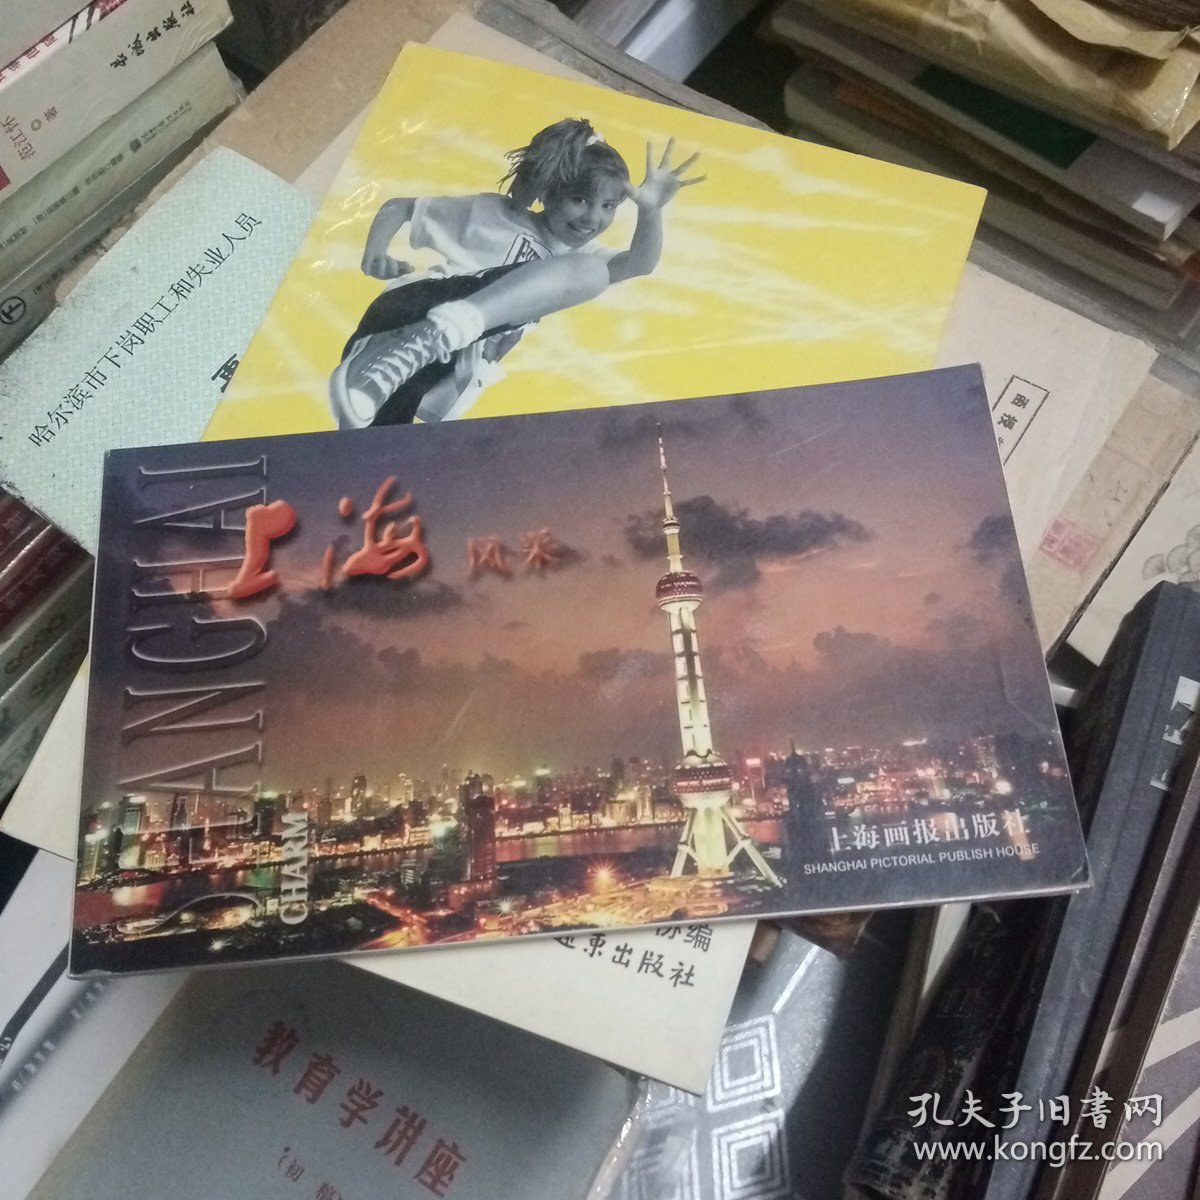 上海风采:明信片